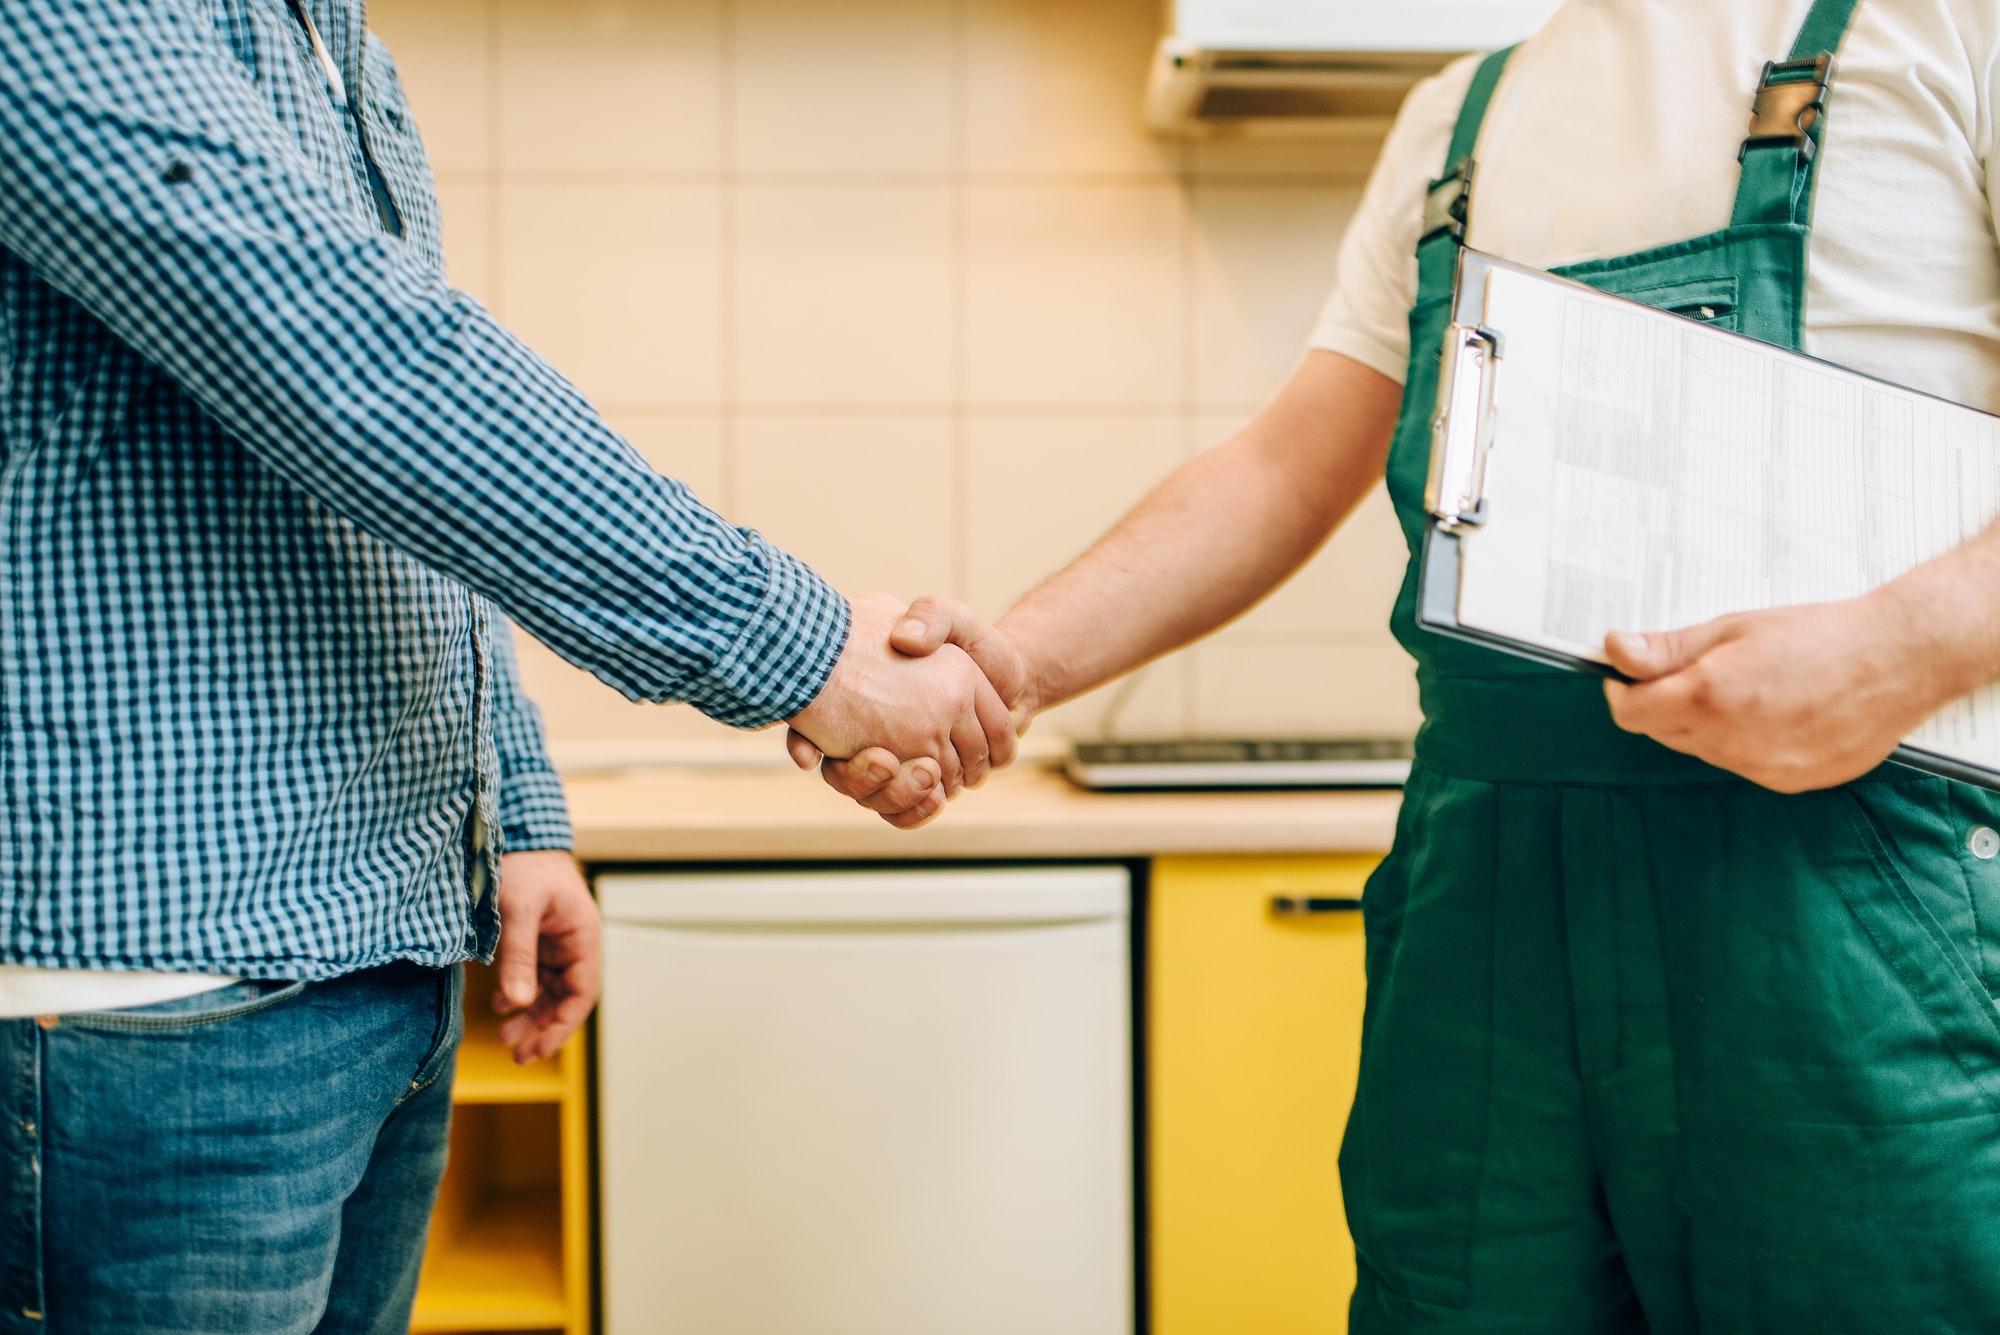 Repairman and customer shake hands, handyman